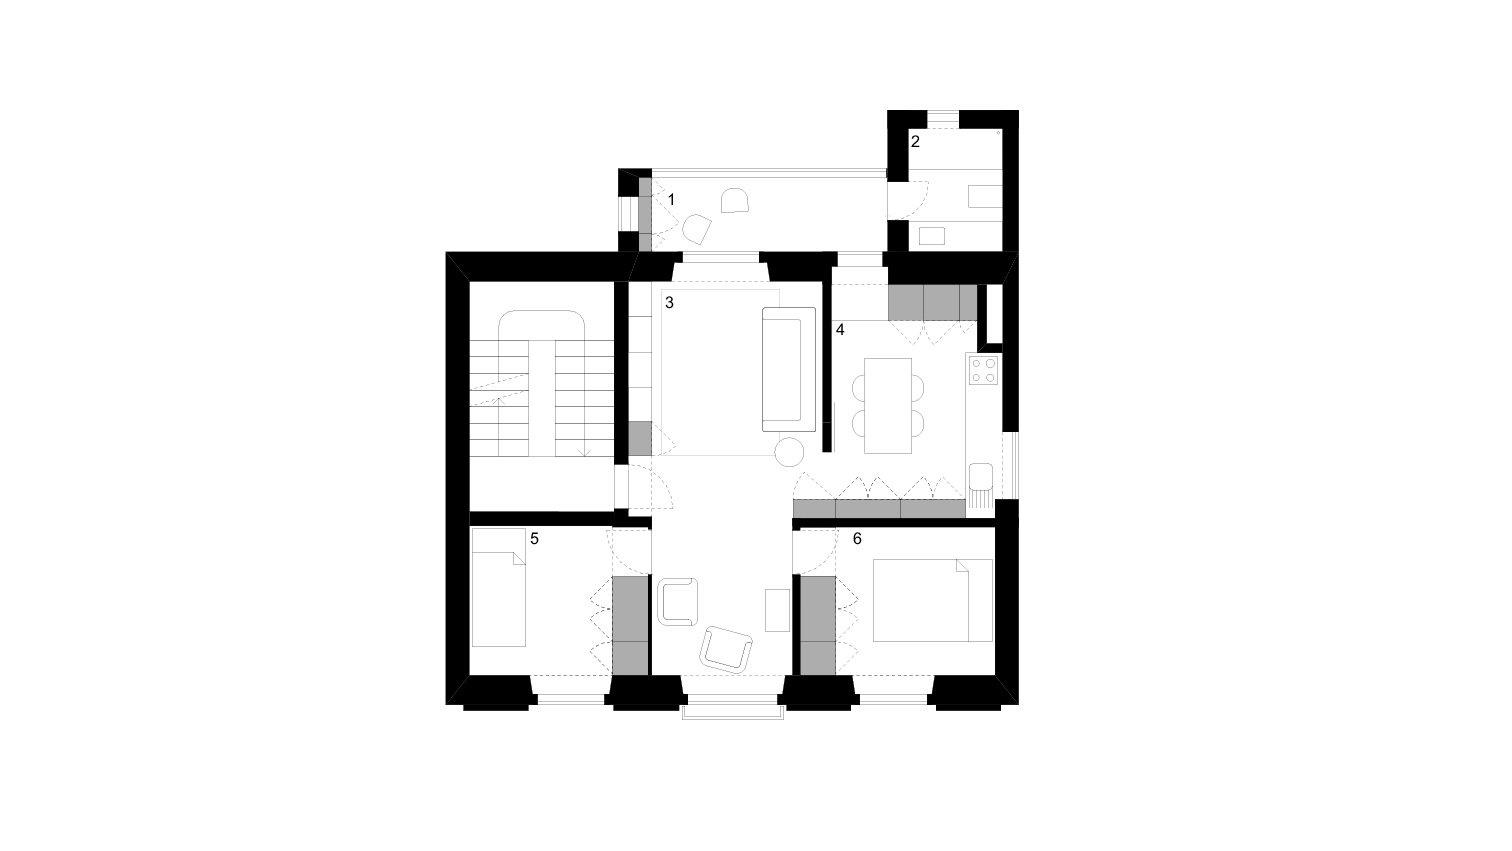 FLOOR PLAN _ 1 winter garden . 2 bathroom . 3 living room . 4 kitchen . 5 bedroom . 6 master bedroom